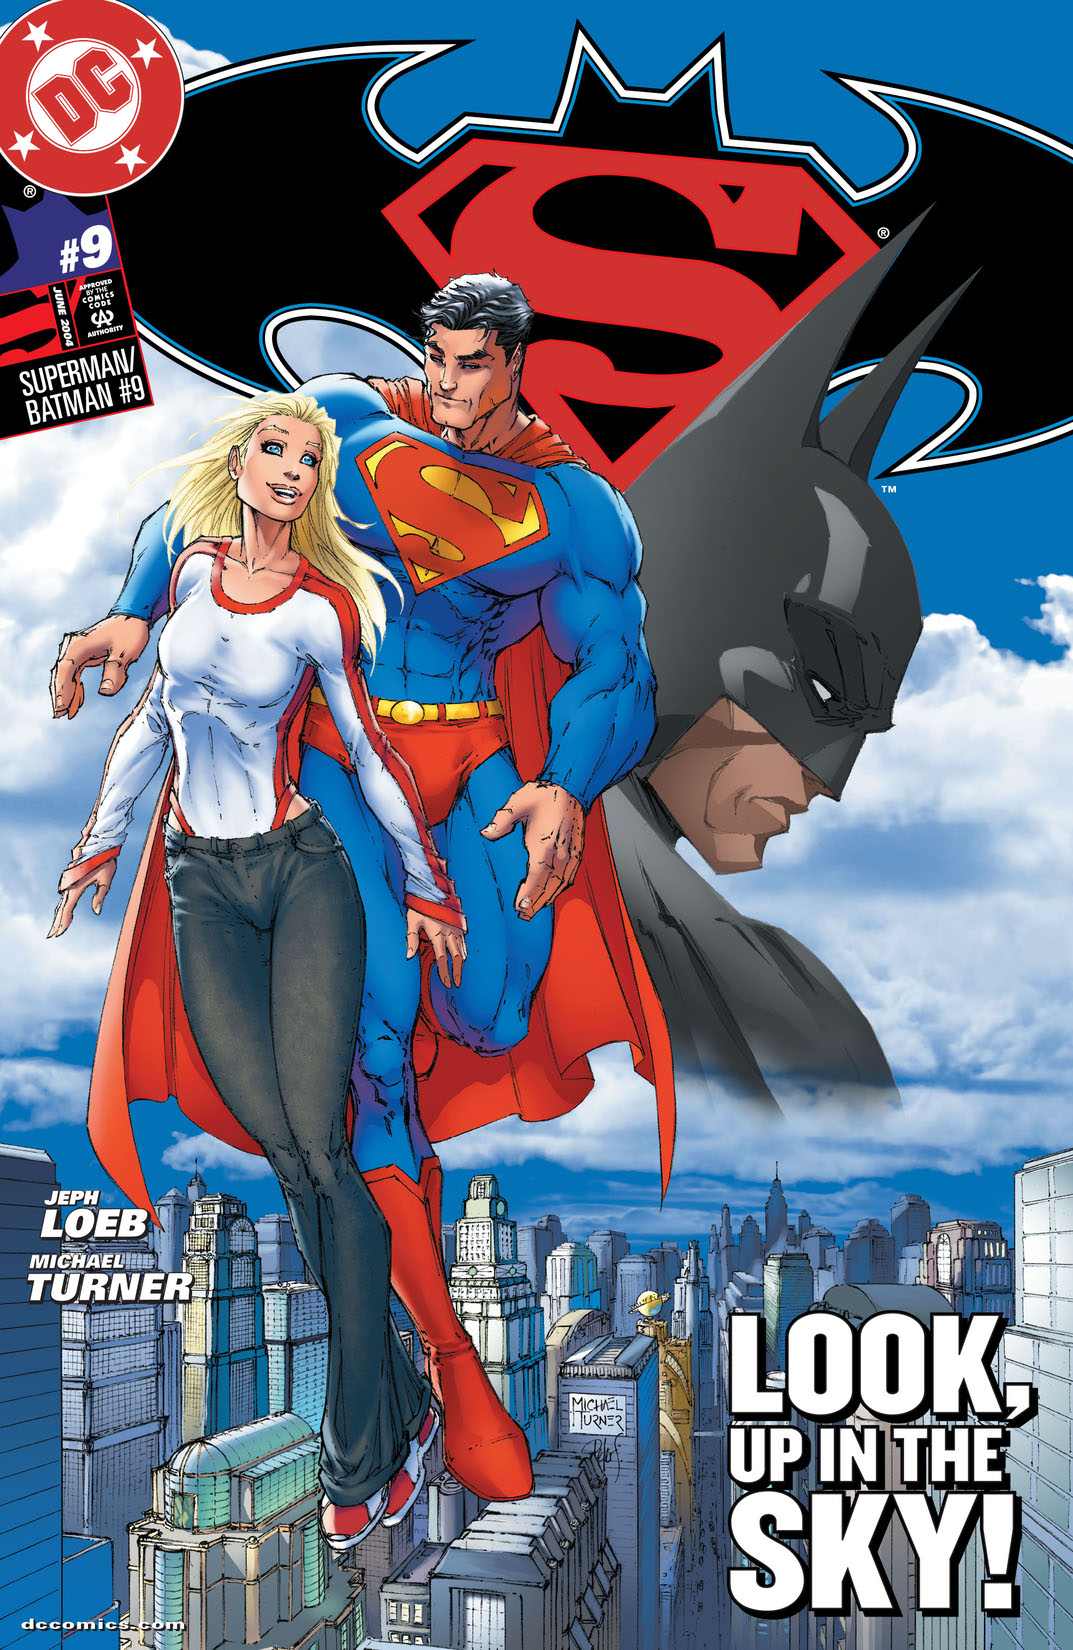 Superman Batman #9 preview images